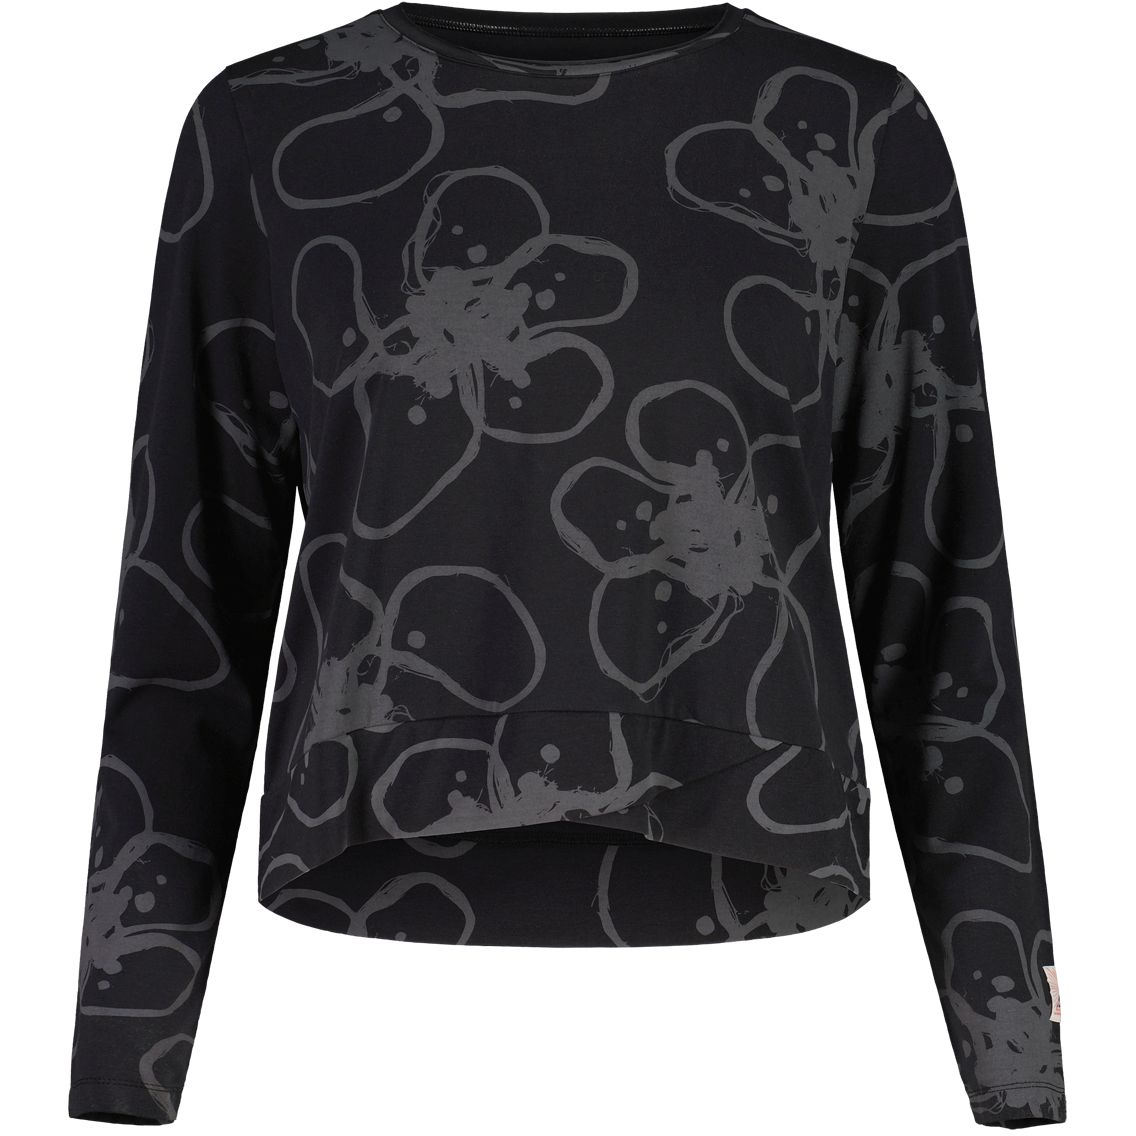 Produktbild von Maloja JuliaM. Yoga Shirt Damen - deep black ropeflower 8864